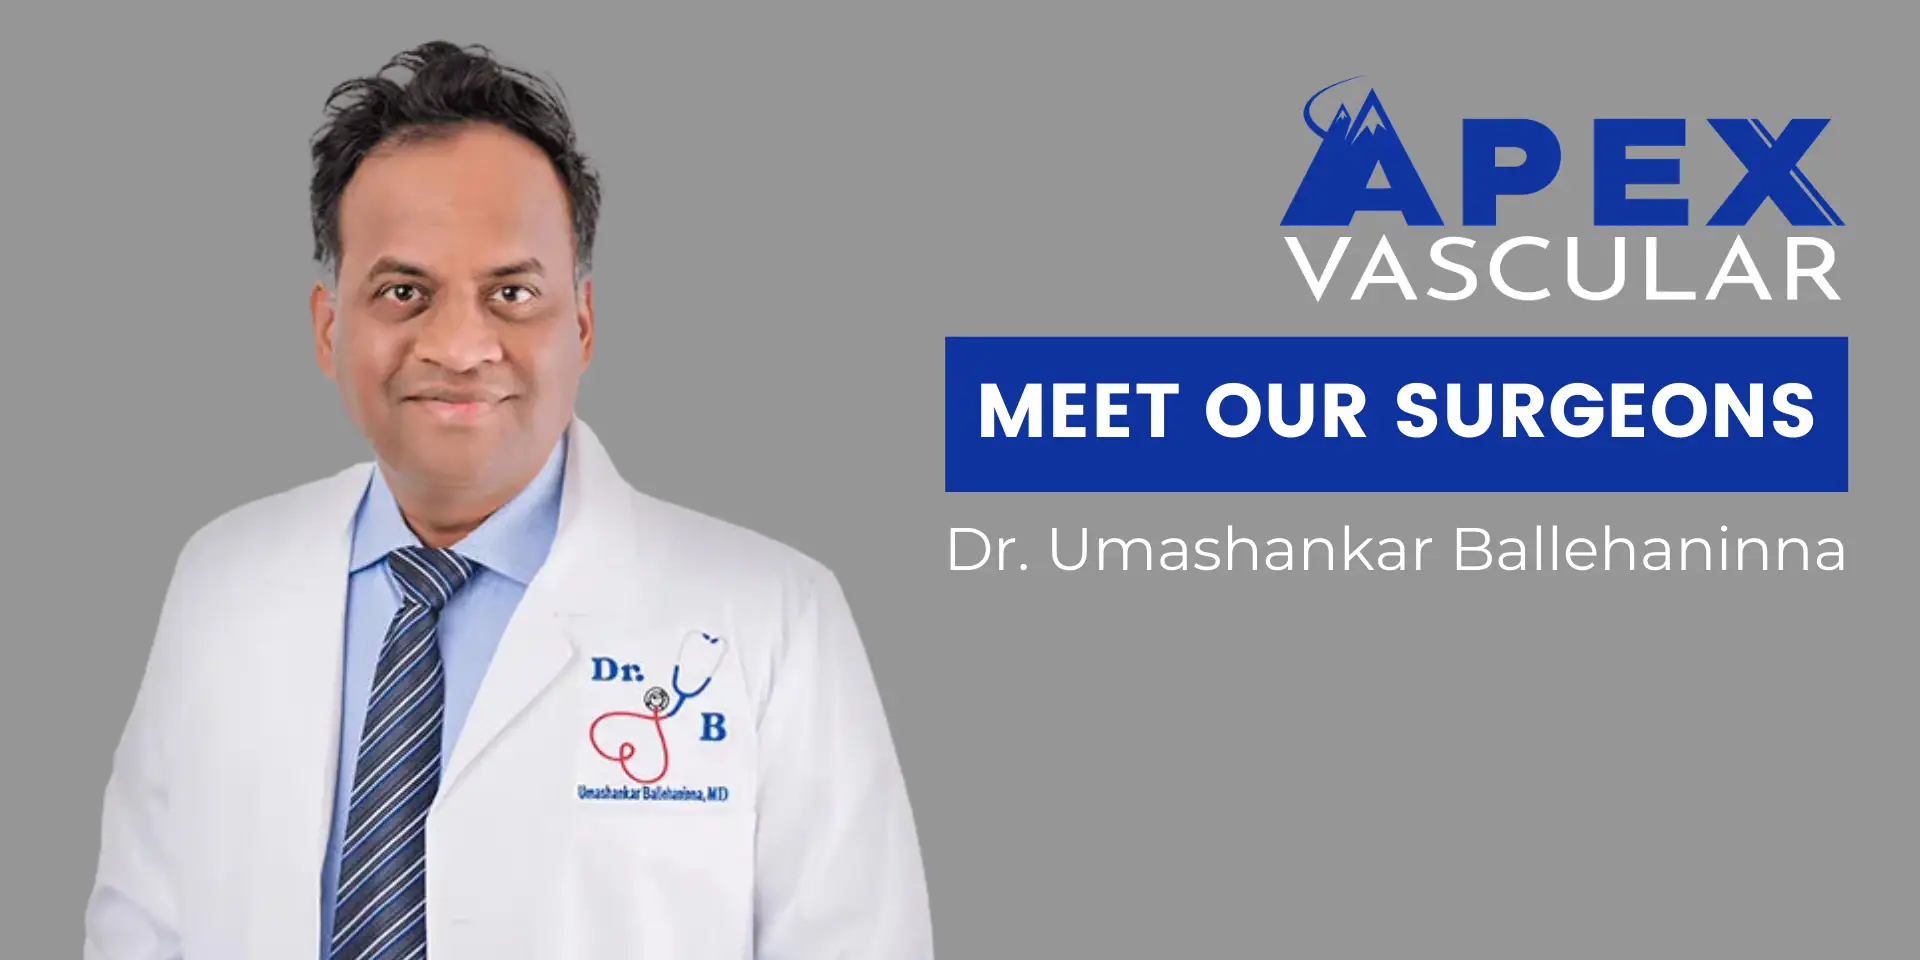 Meet Our Board-Certified Vascular Surgeon: Dr. Umashankar Ballehaninna